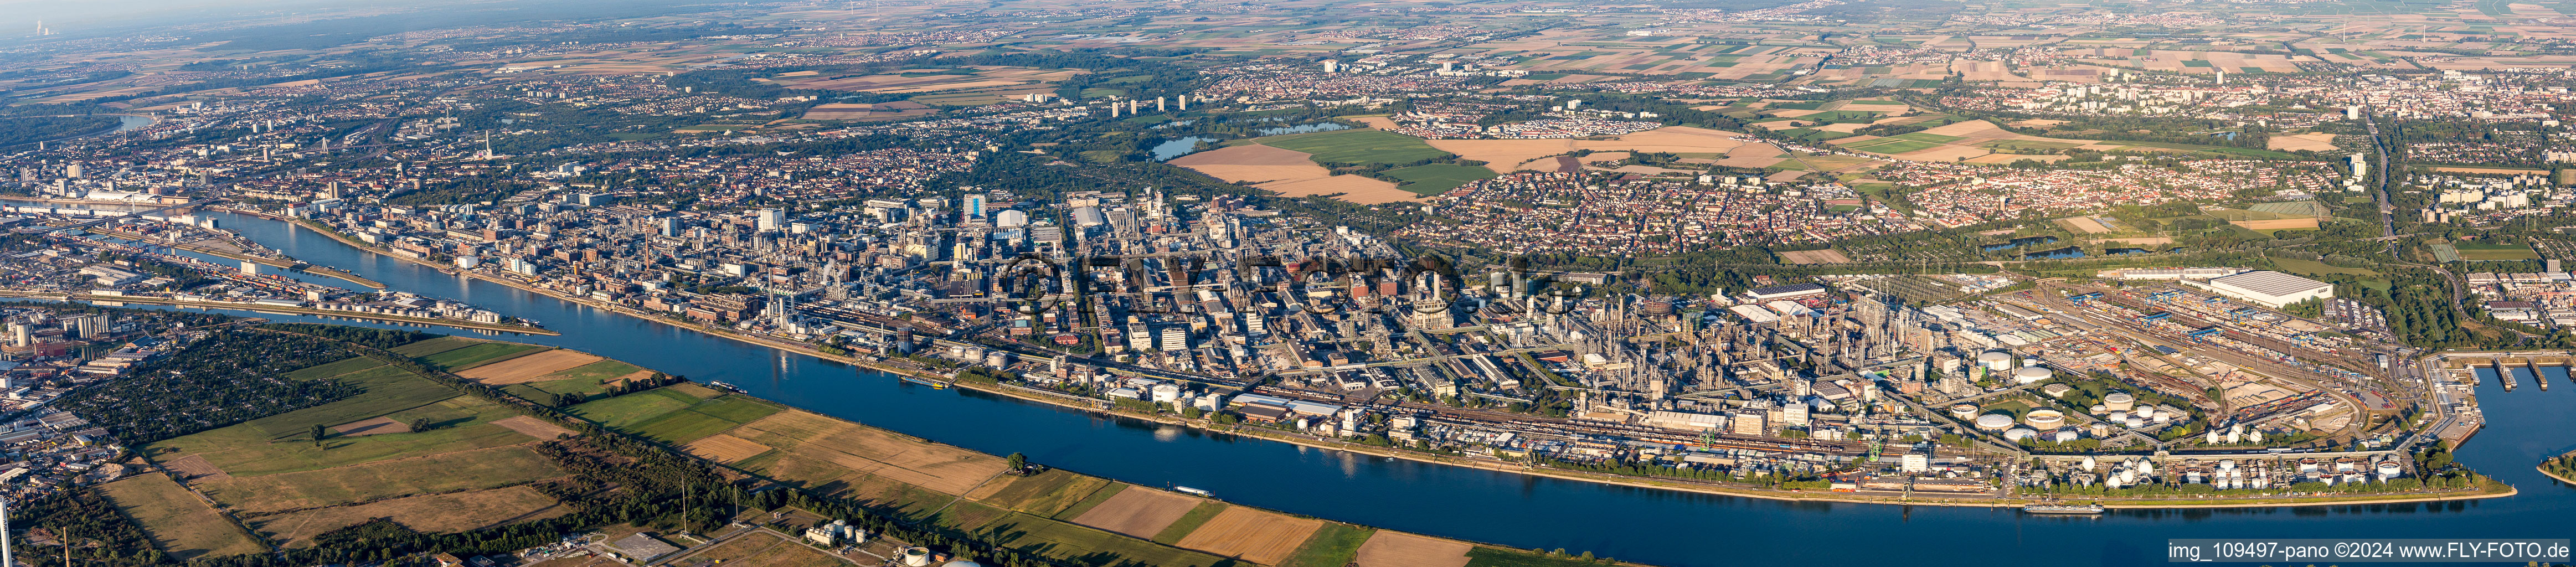 Panorama im Ortsteil BASF in Ludwigshafen am Rhein im Bundesland Rheinland-Pfalz, Deutschland